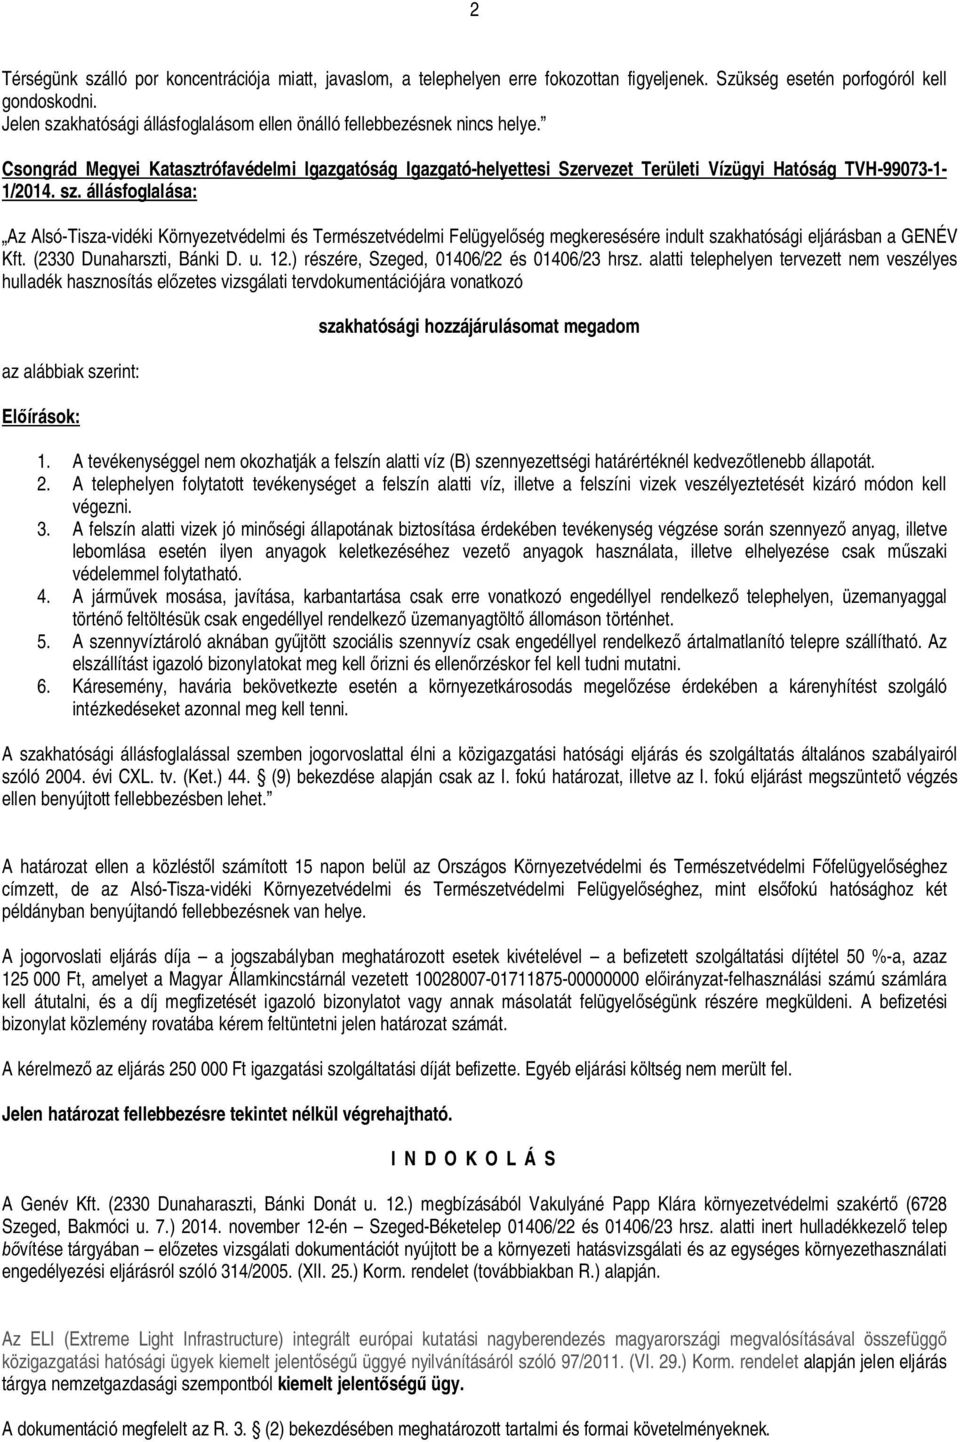 sz. állásfoglalása: Az Alsó-Tisza-vidéki Környezetvédelmi és Természetvédelmi Felügyel ség megkeresésére indult szakhatósági eljárásban a GENÉV Kft. (2330 Dunaharszti, Bánki D. u. 12.